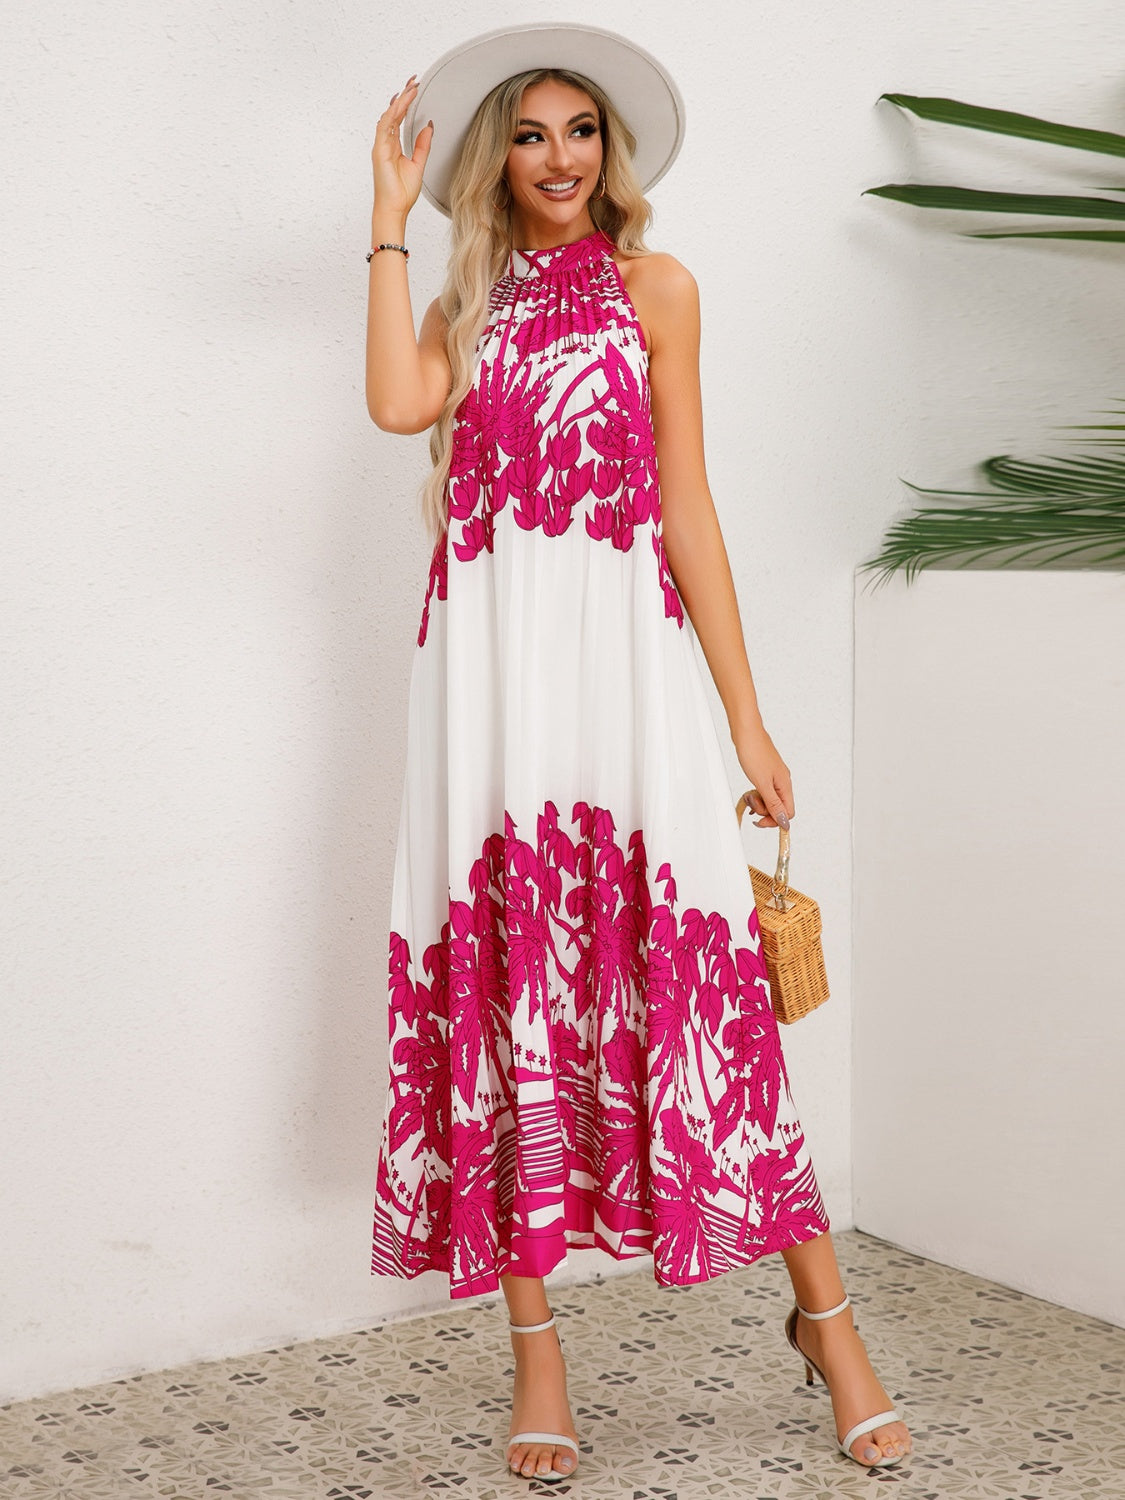 TEEK - Tied Halter Printed Sleeveless  Dress DRESS TEEK Trend Hot Pink S 